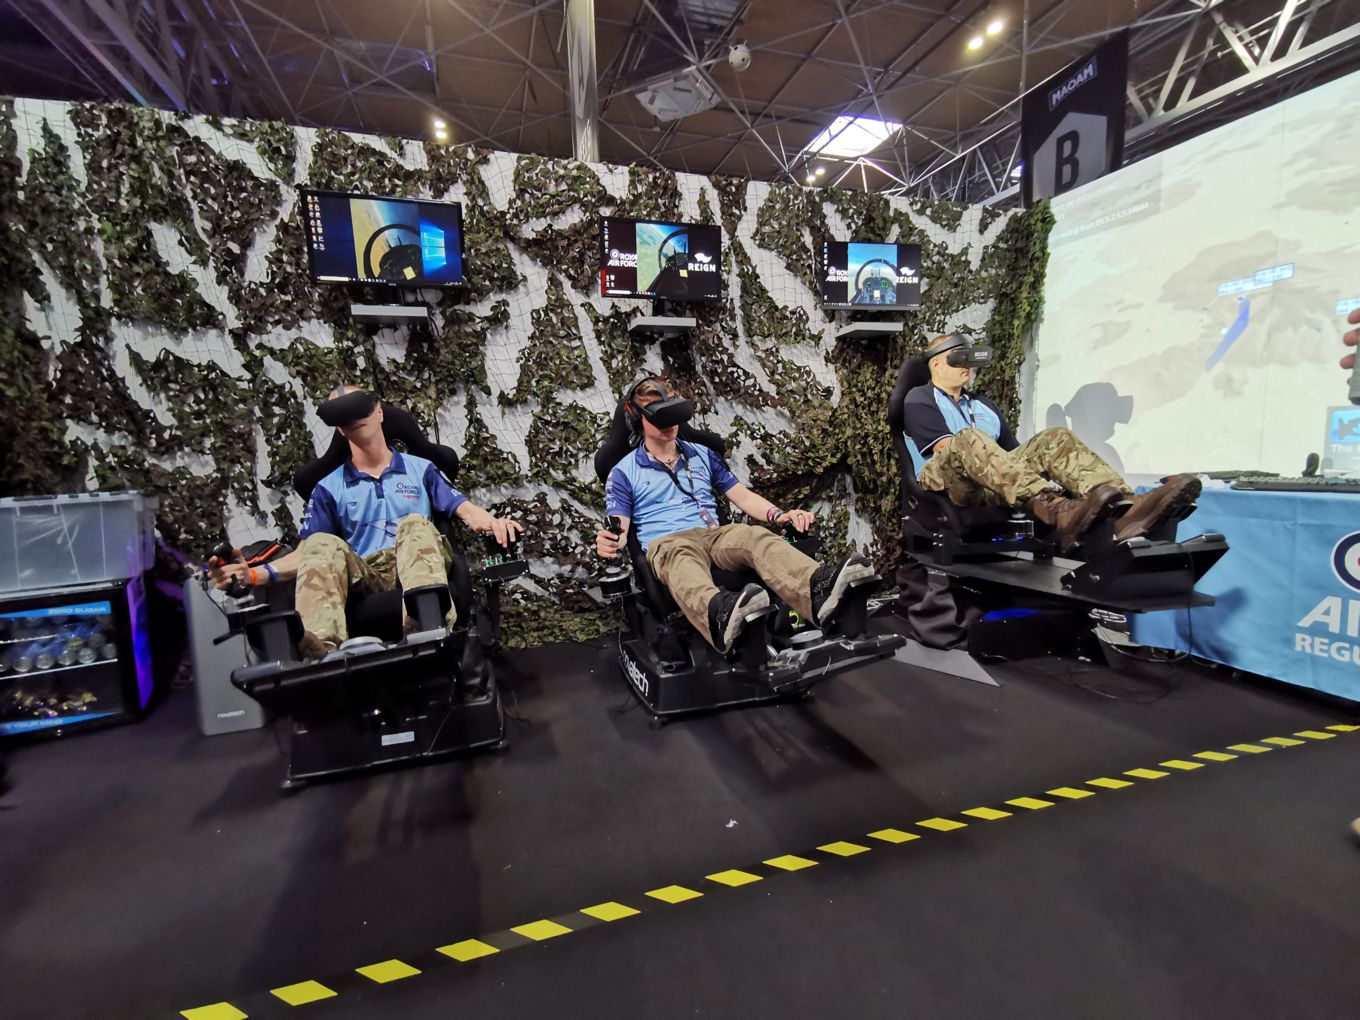 The RAF VGEA Team on flight simulators. Wing Commander Penter is far right